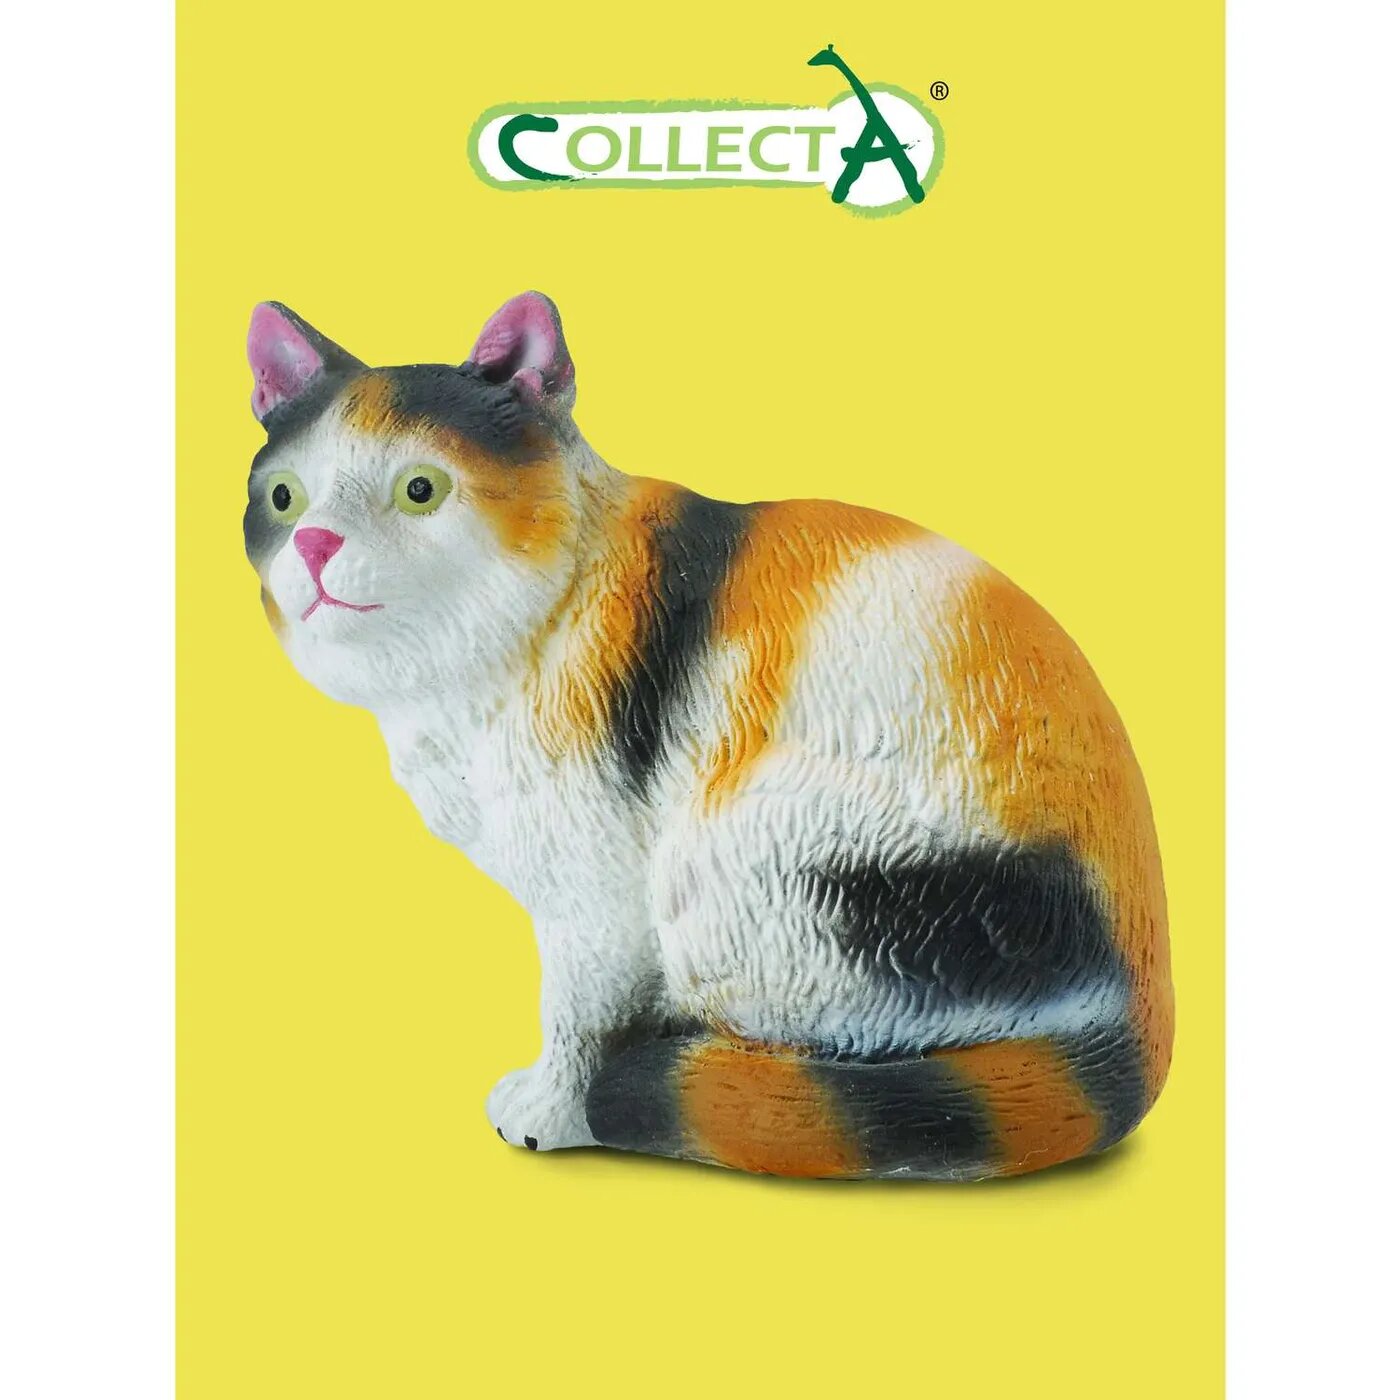 Фигурка животного Collecta домашняя кошка